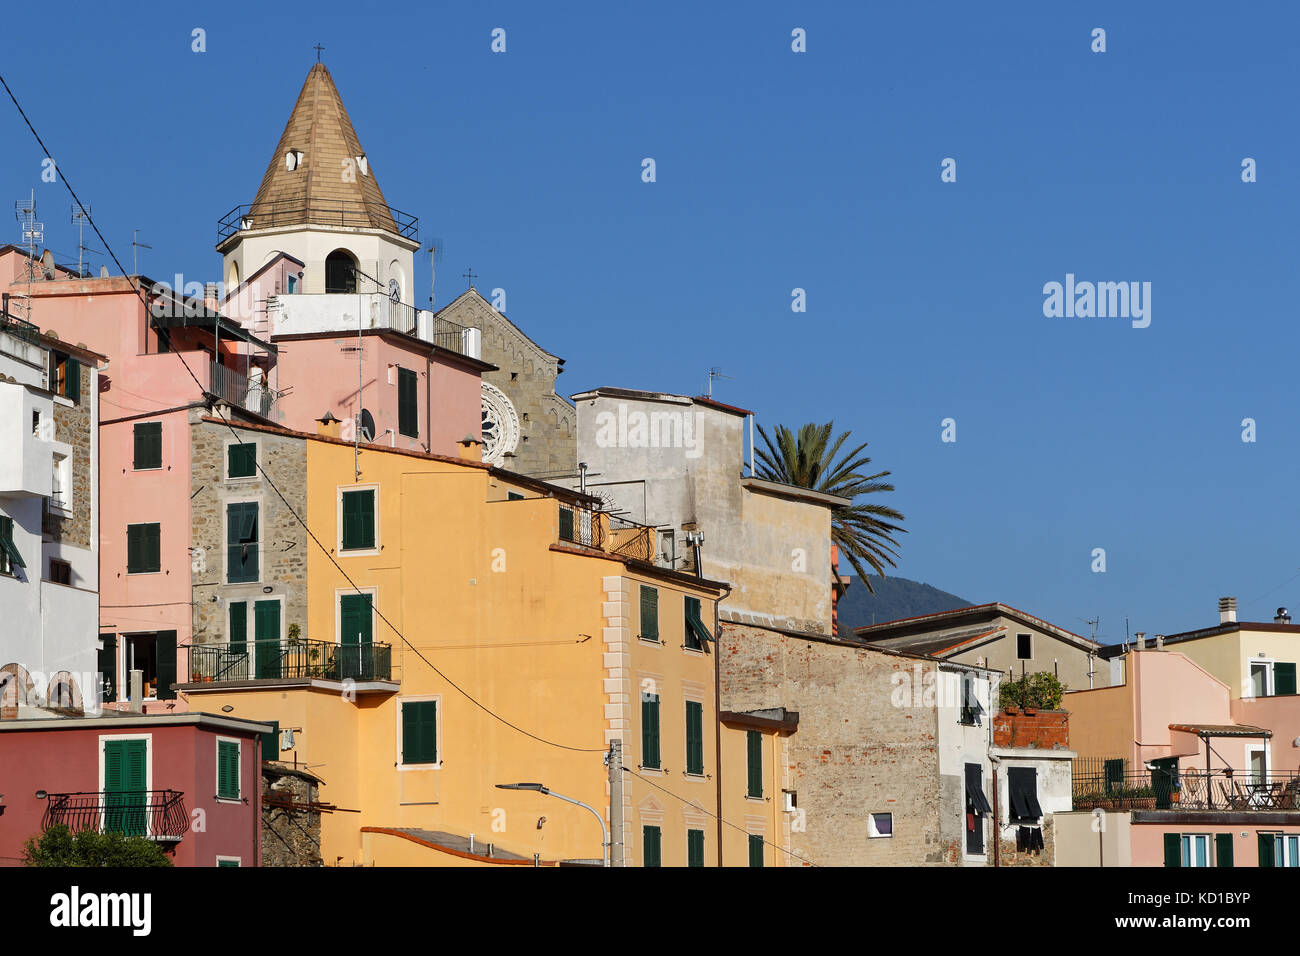 The village of Corniglia in Cinque Terre National park Stock Photo